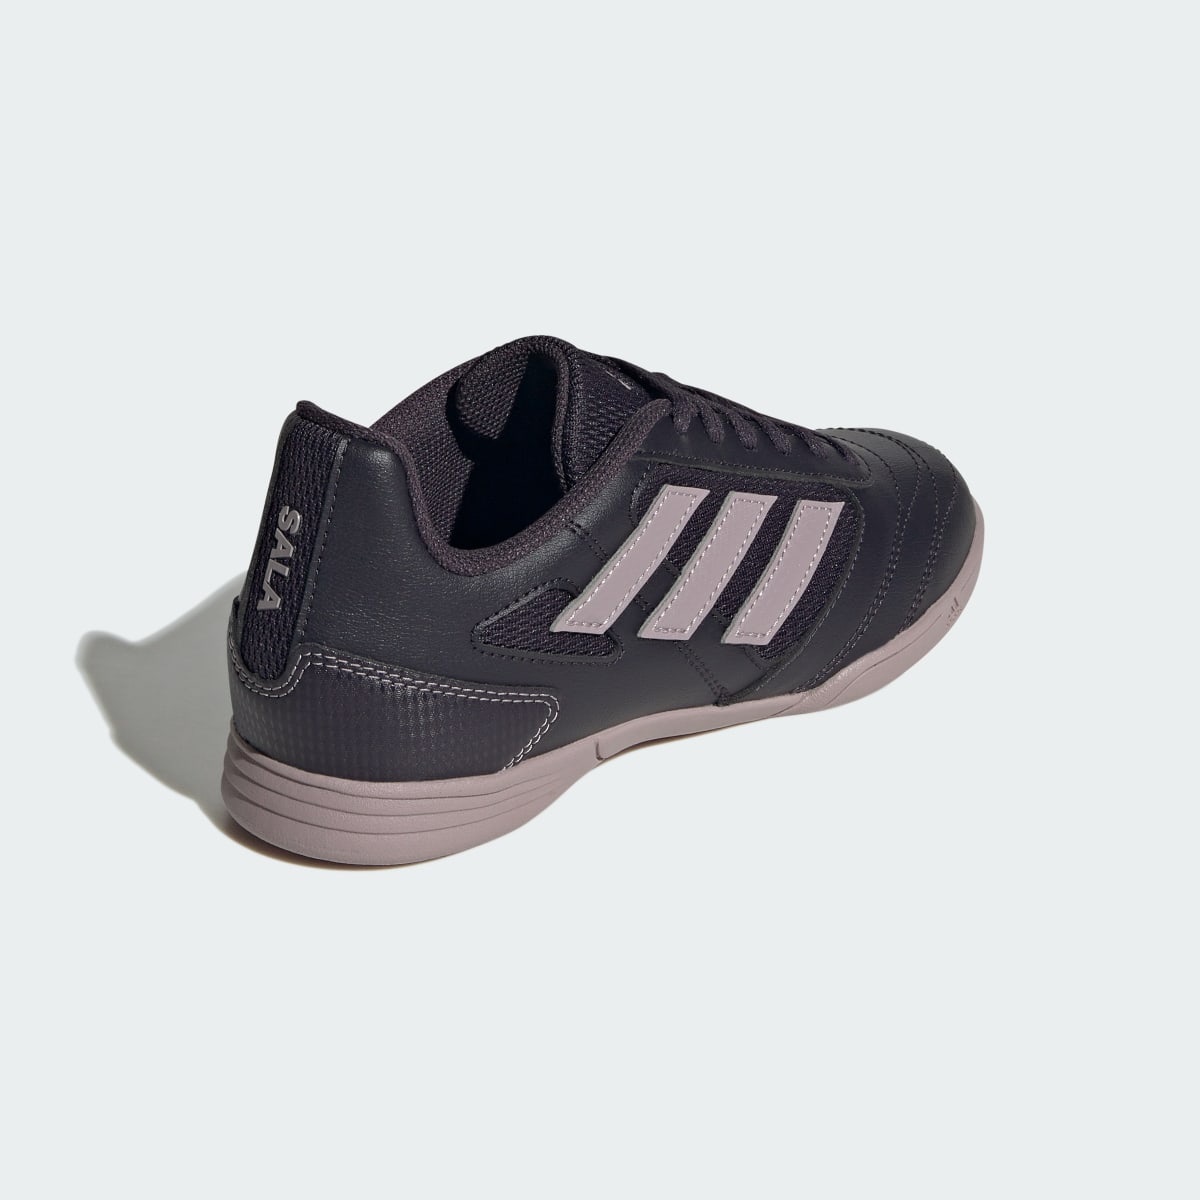 Adidas Super Sala II Indoor Boots. 6